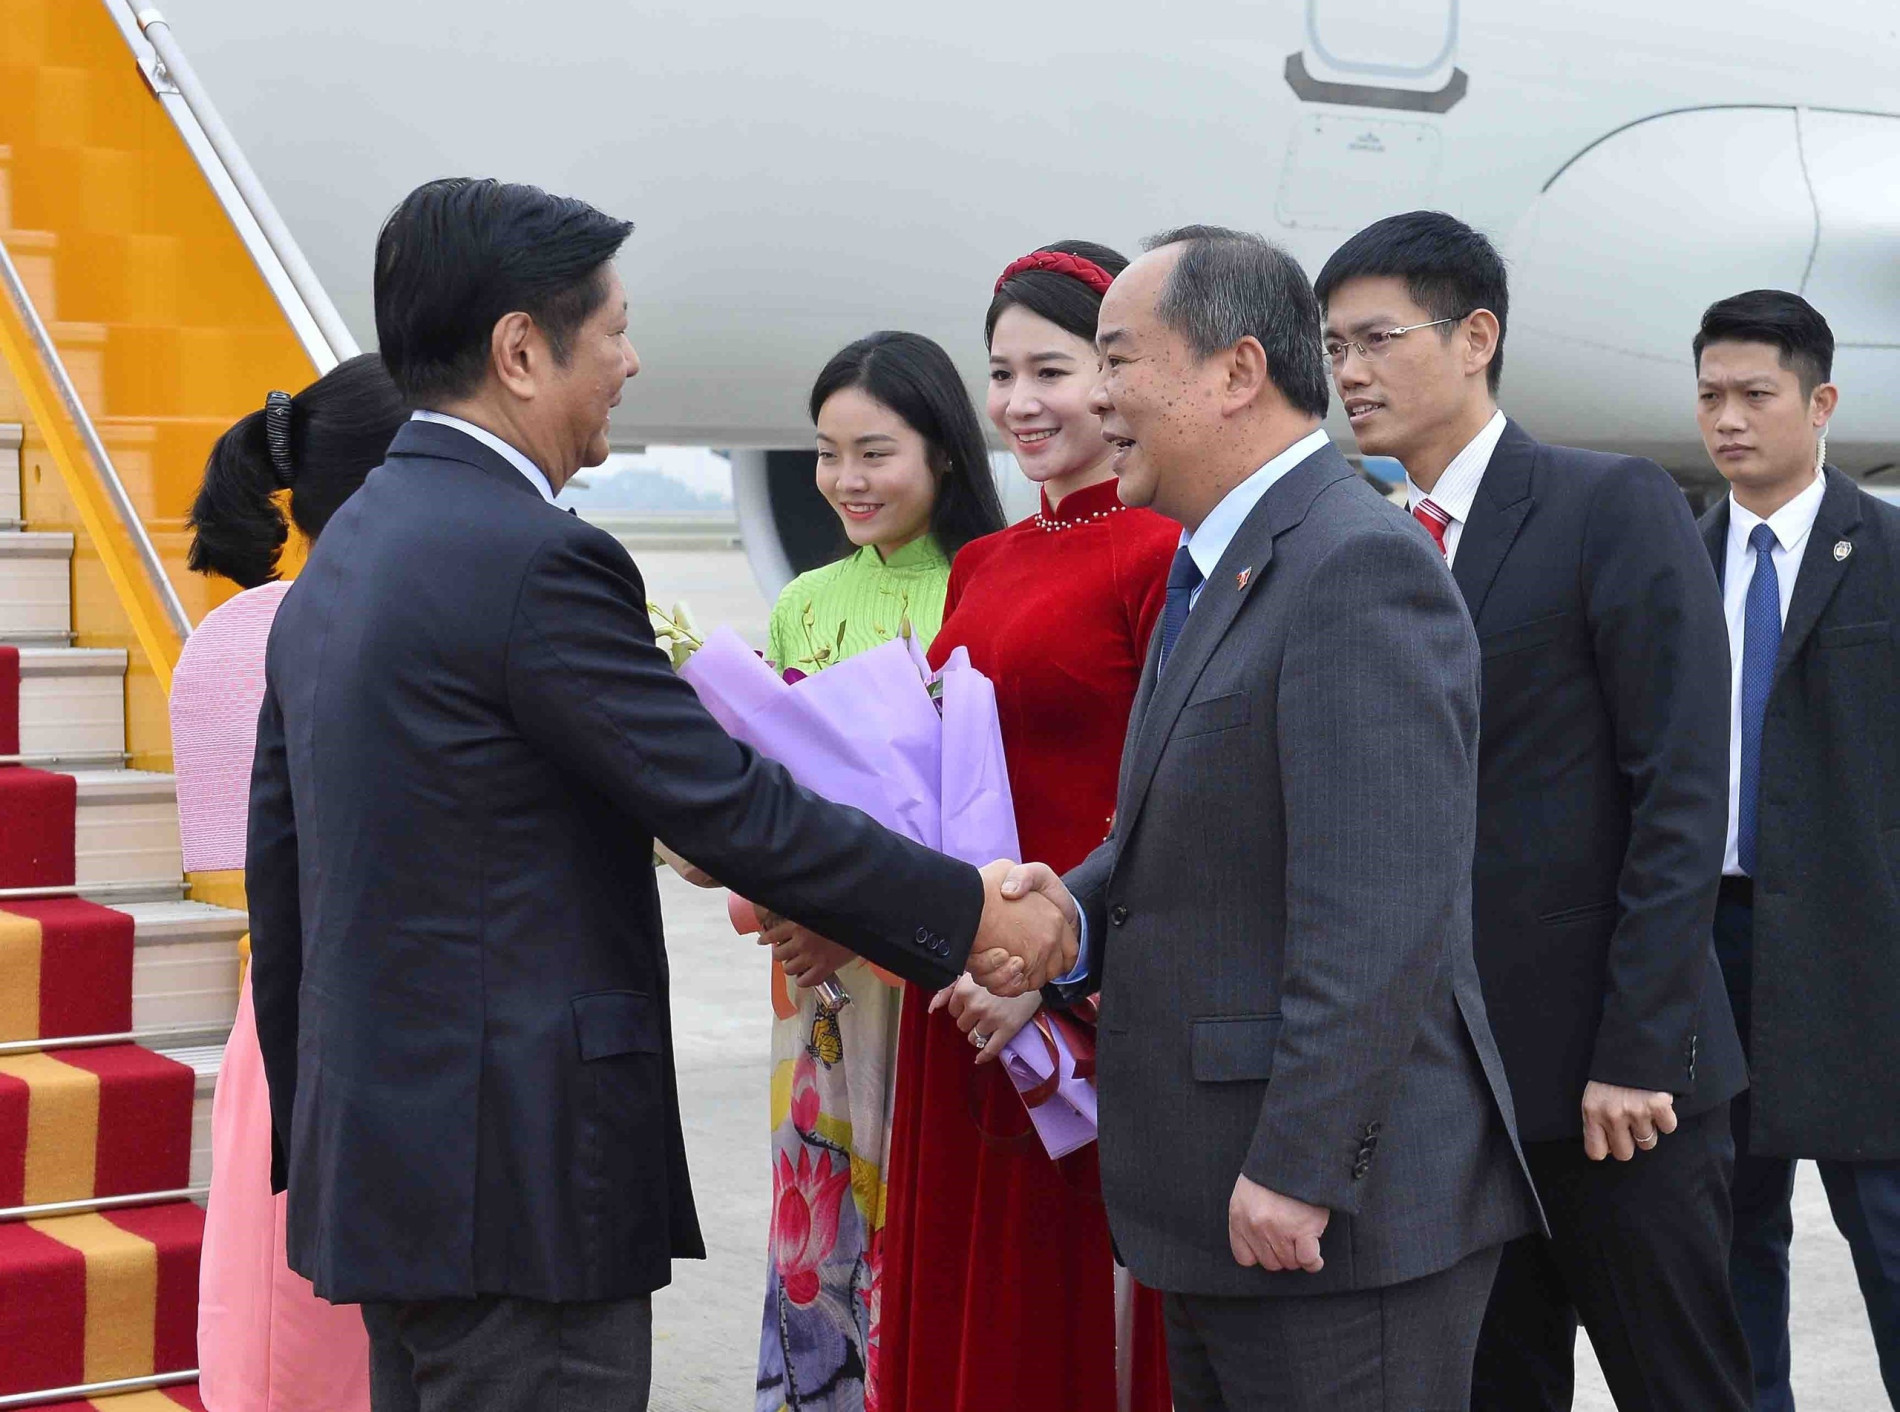 Tổng thống Philippines đến Hà Nội, bắt đầu chuyến thăm cấp Nhà nước tới Việt Nam - Ảnh 1.